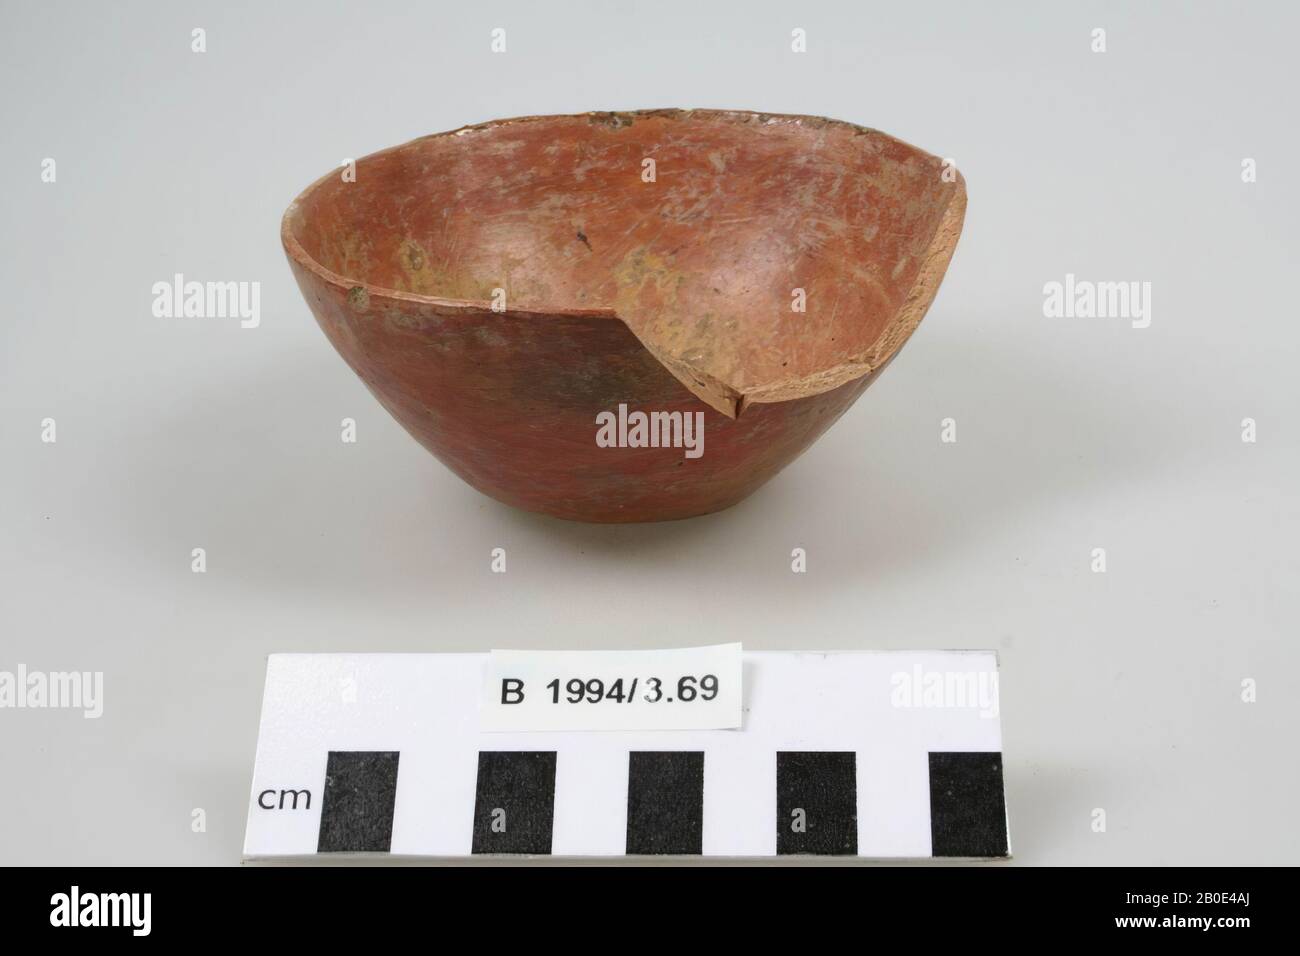 Ciotola, ceramica, h: 5.6 cm, diam: 11.6 cm, Iran Foto Stock